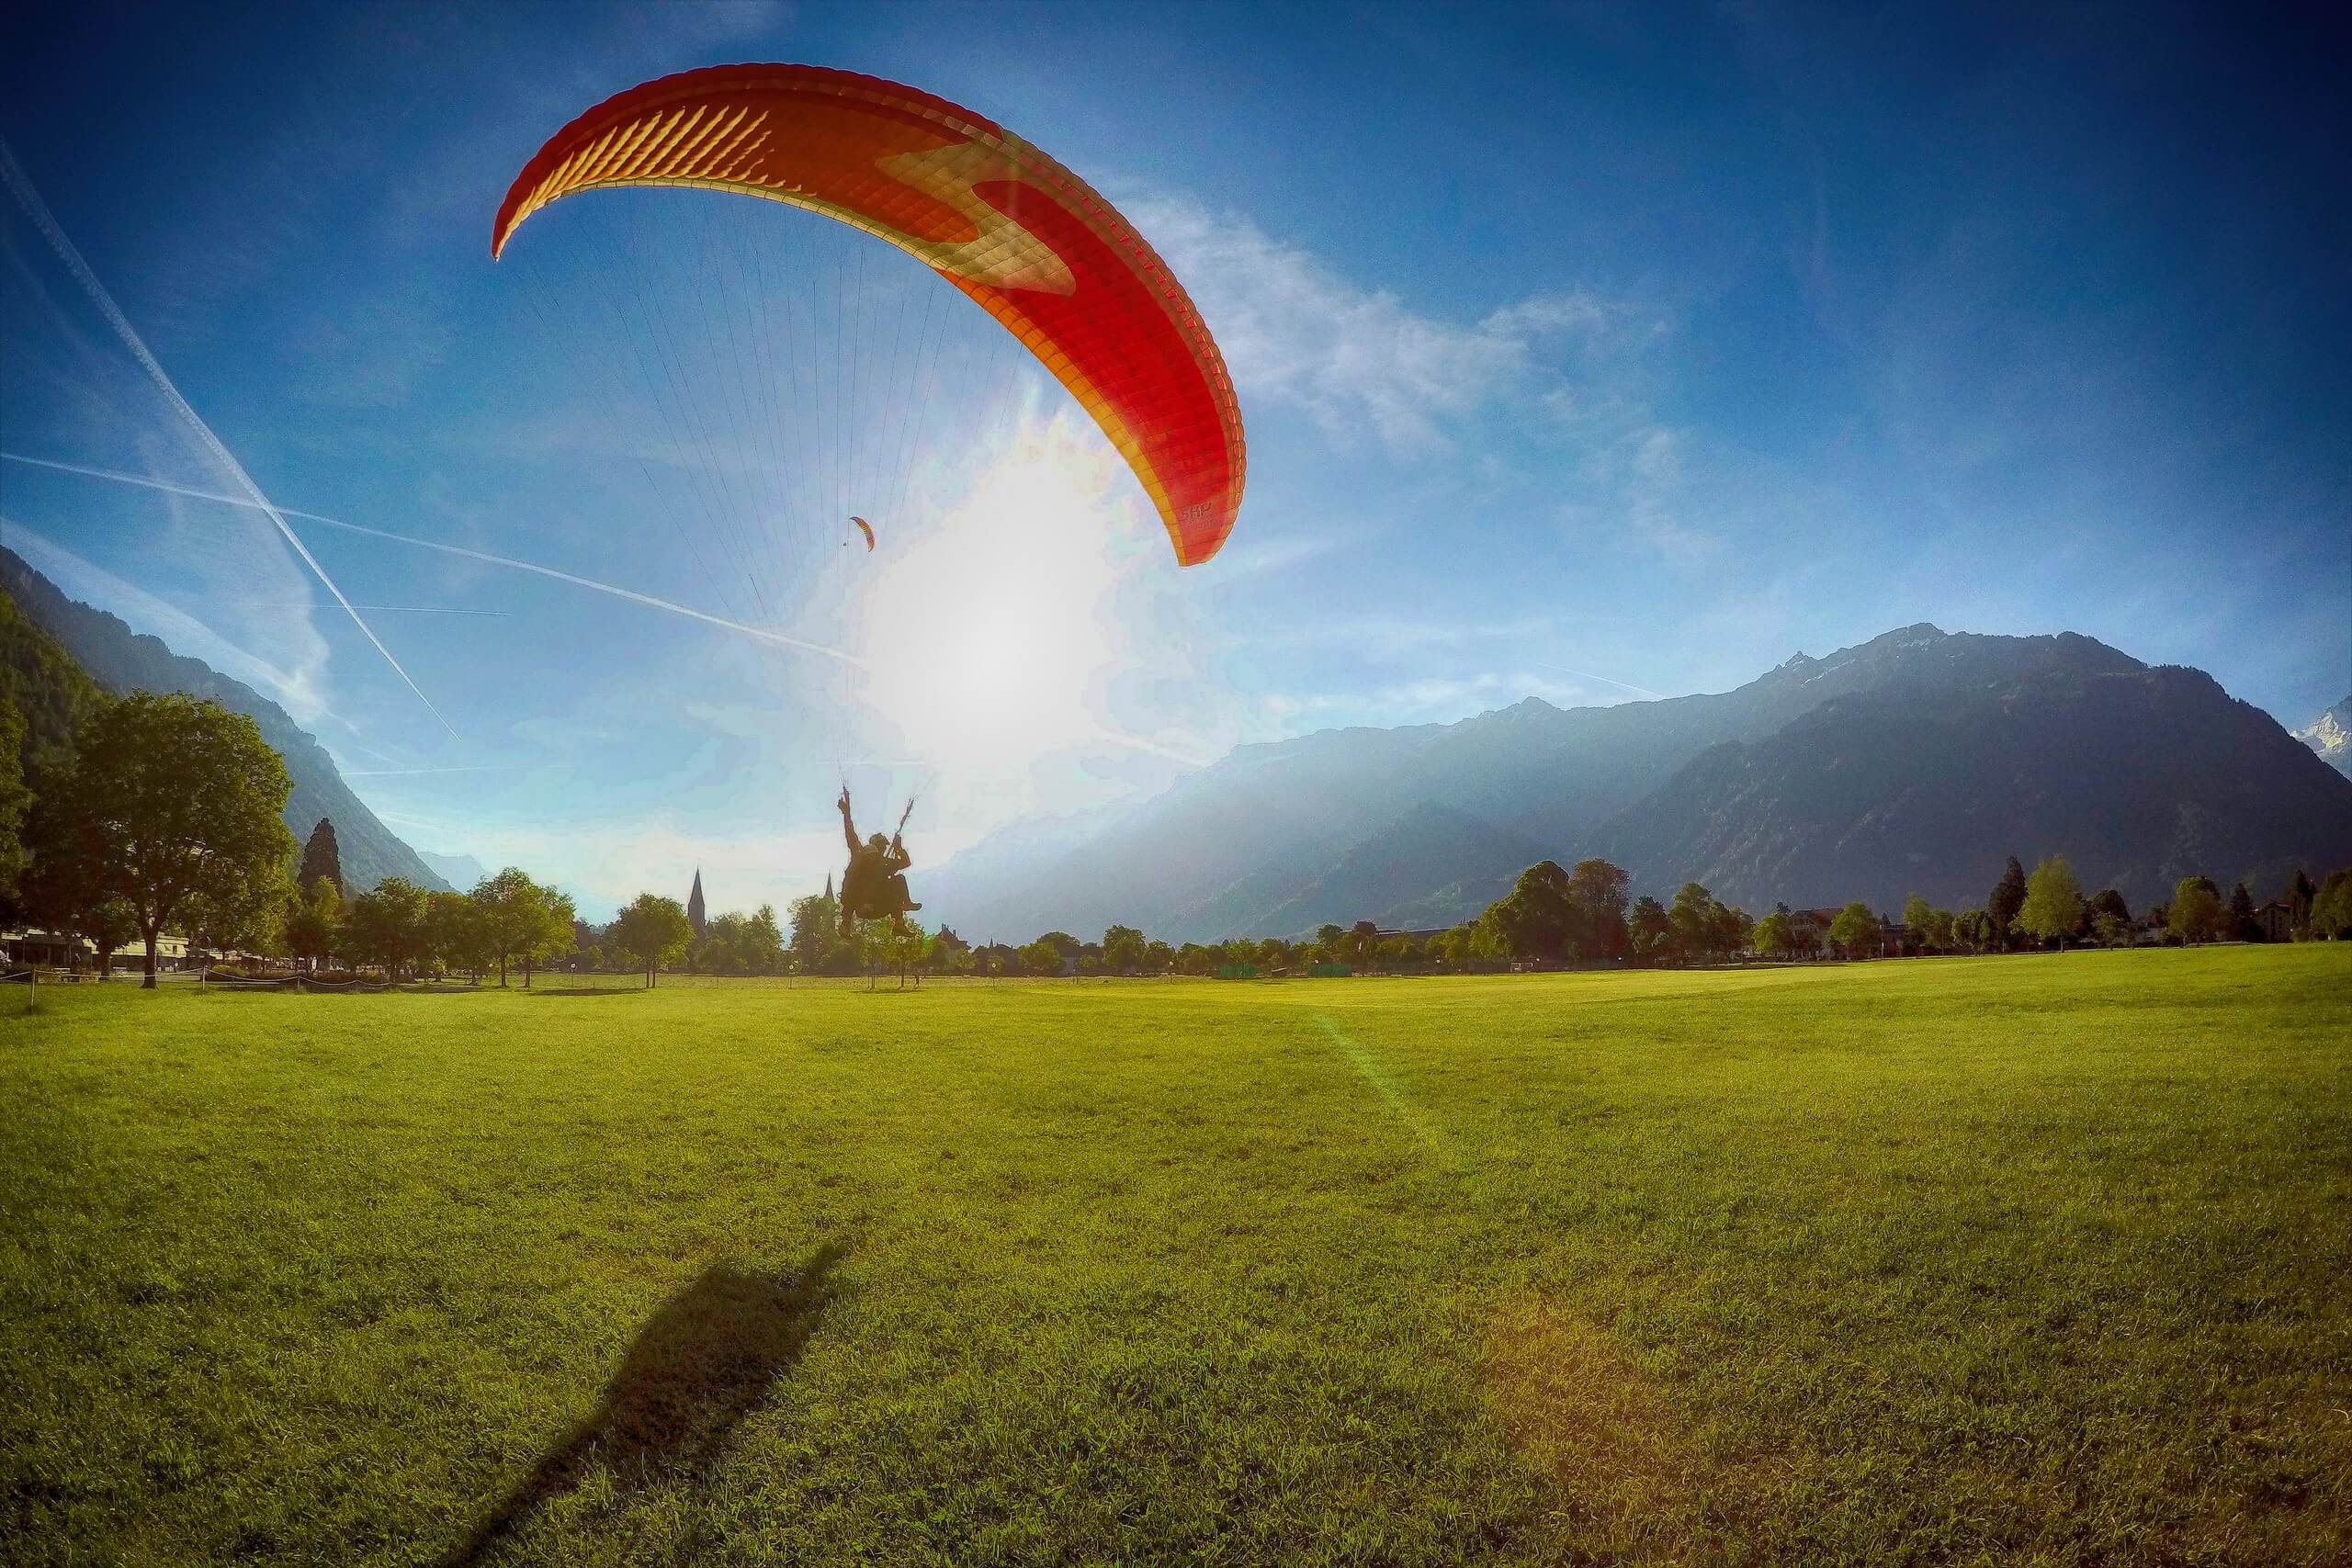 interlaken-paragliding-alpinair-interlaken-landung